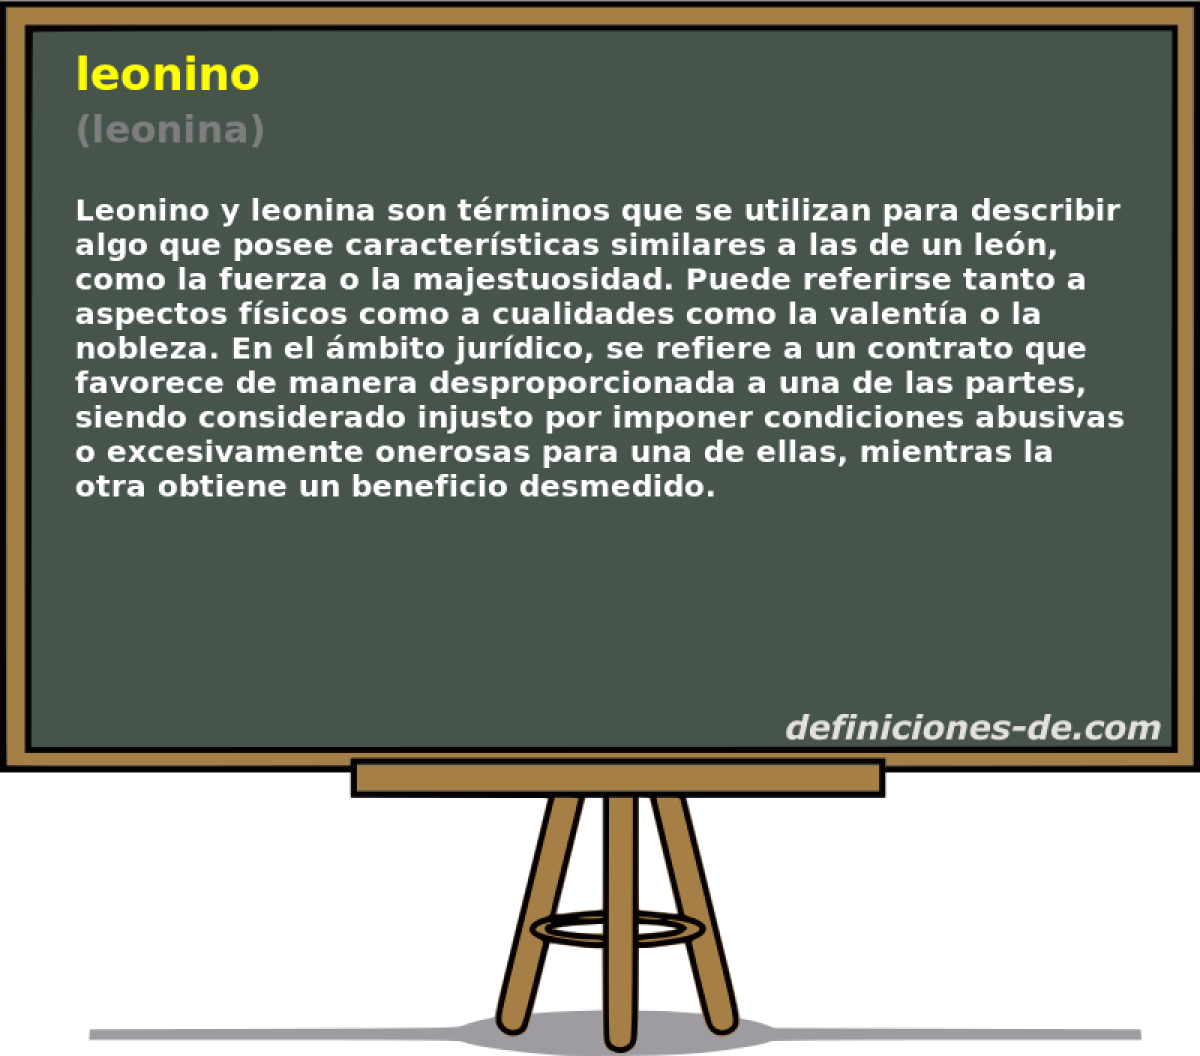 leonino (leonina)